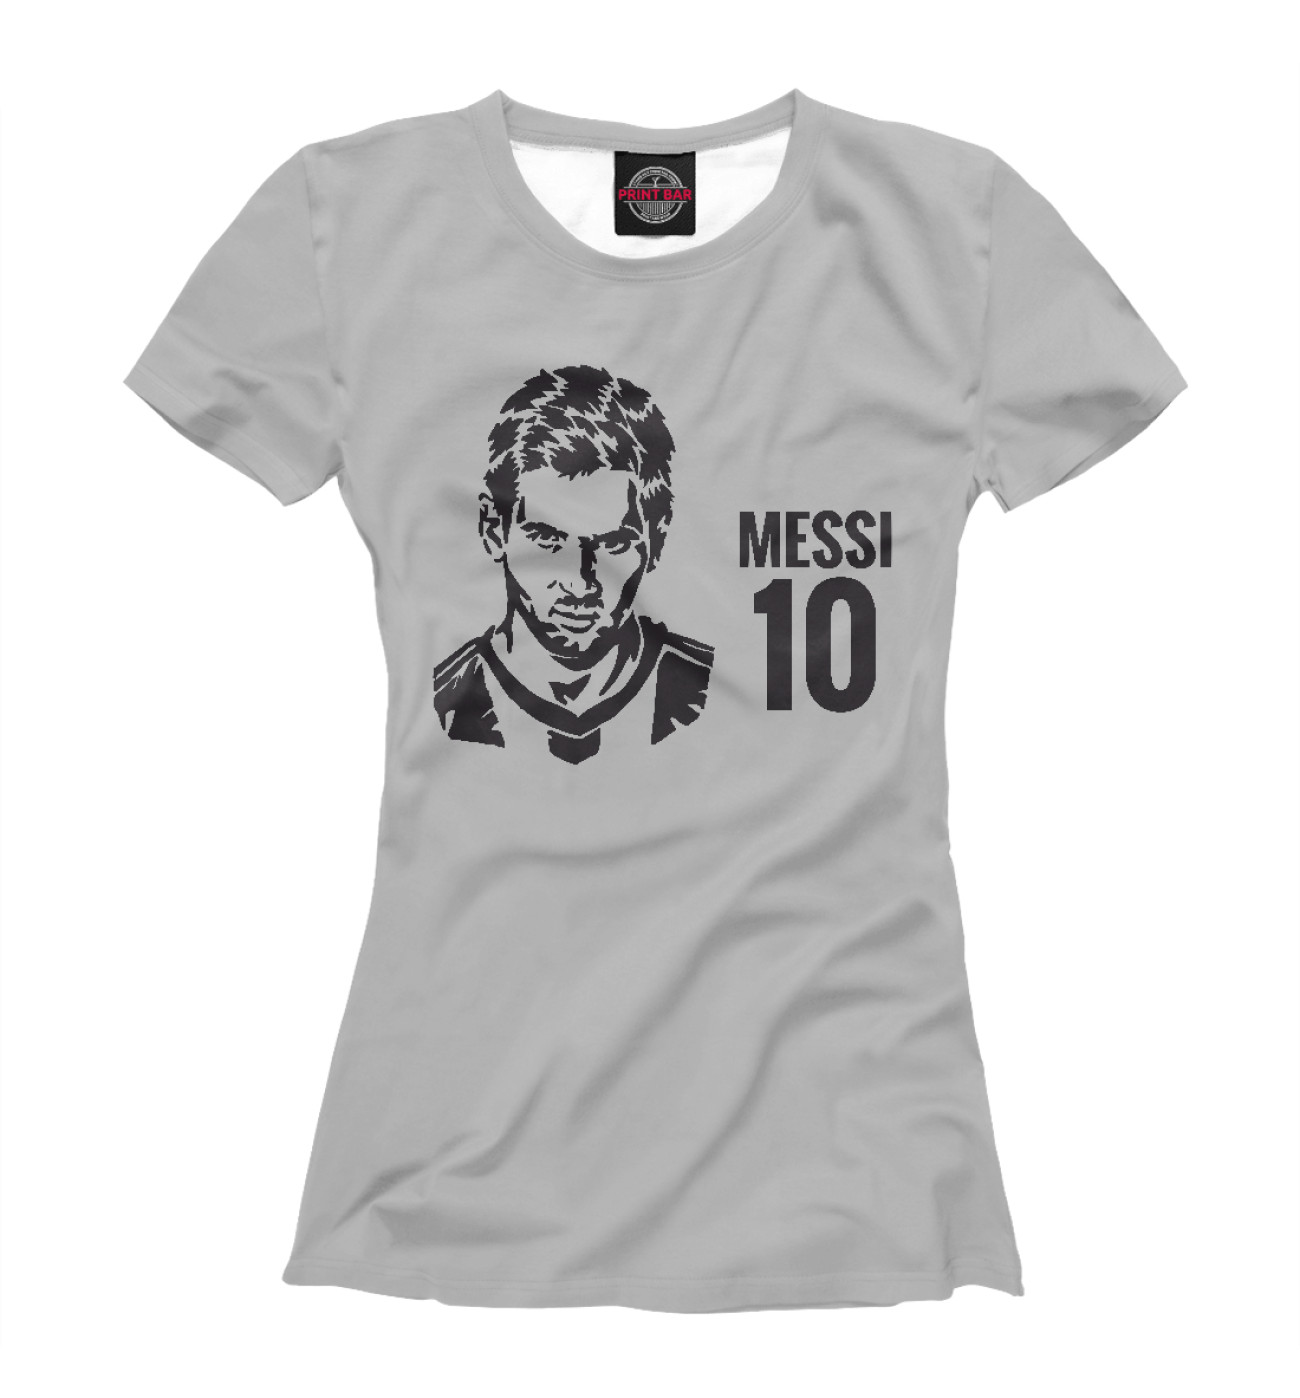 Женская Футболка Messi 10, артикул: BAR-869510-fut-1